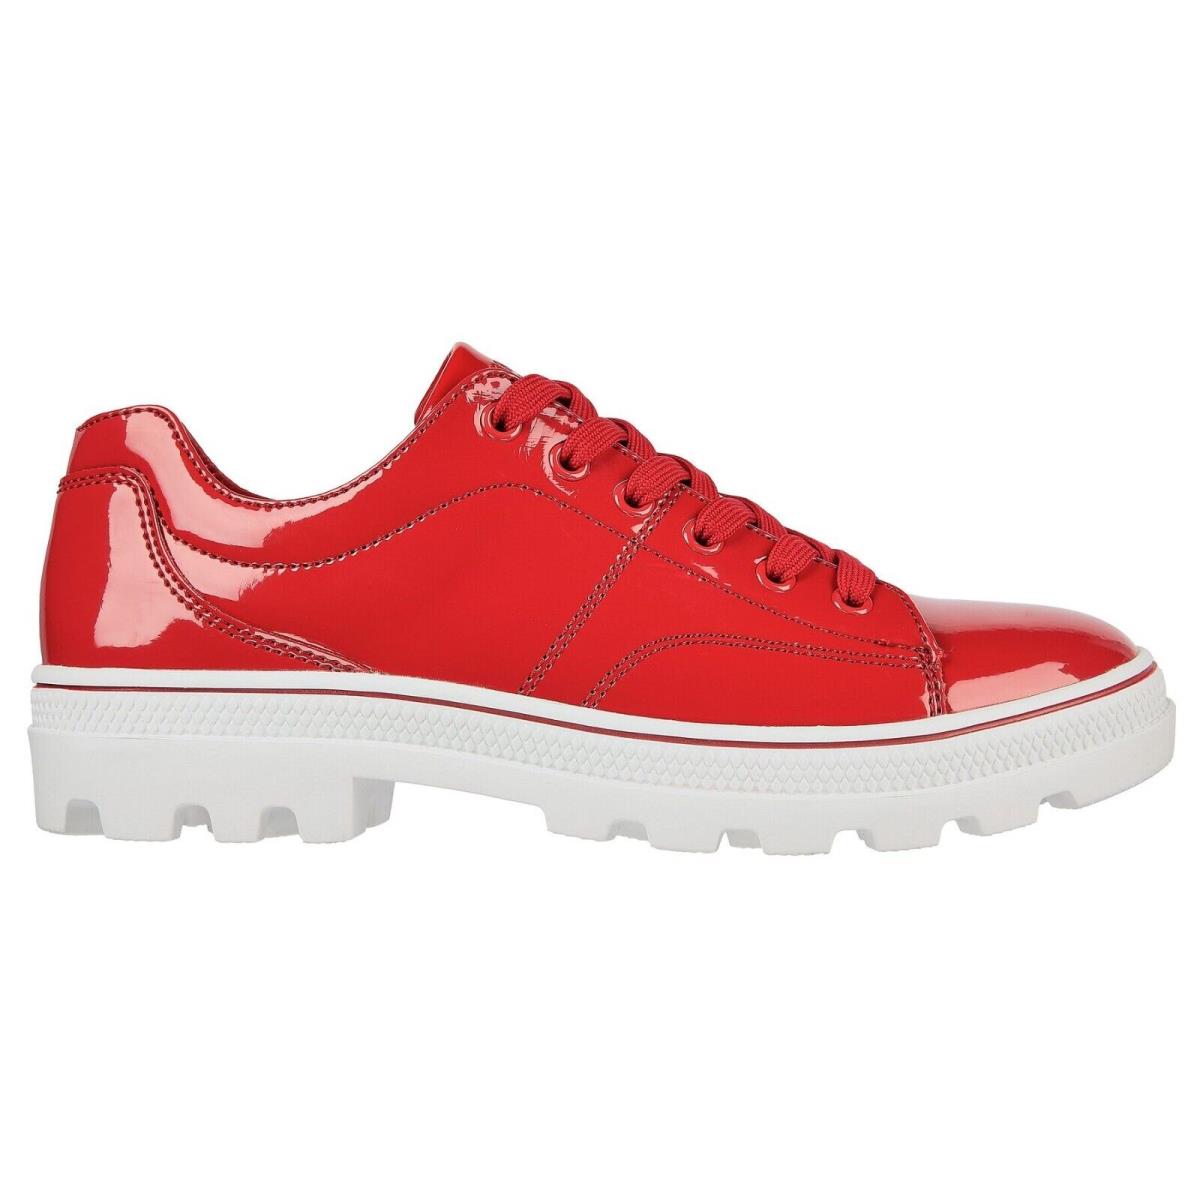 Skechers shoes Roadies - Red 4